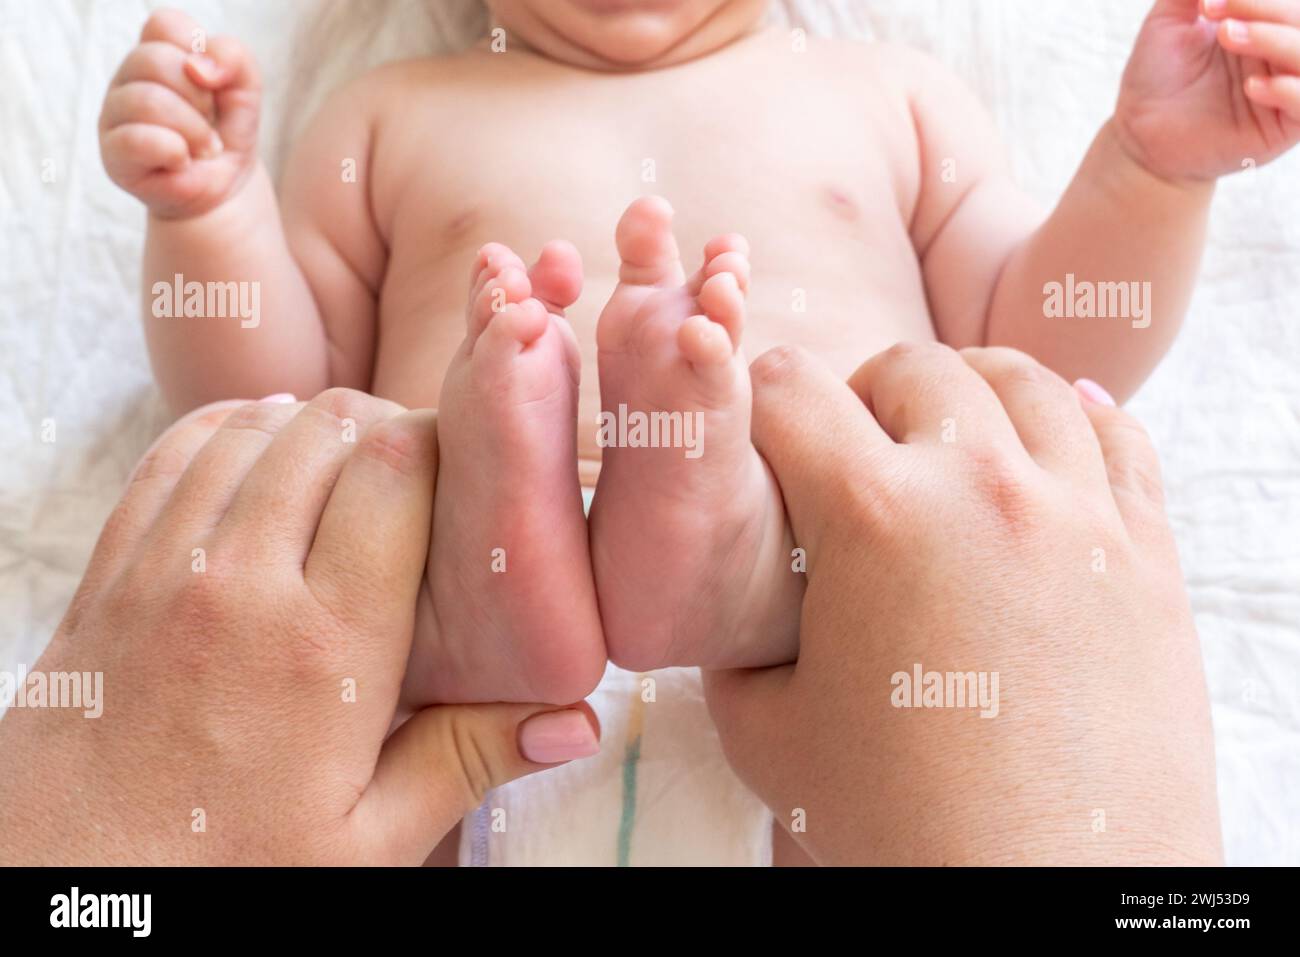 Massagezeit für die winzigen Füße des Neugeborenen, Konzept der heilenden Berührung der Mutter Stockfoto